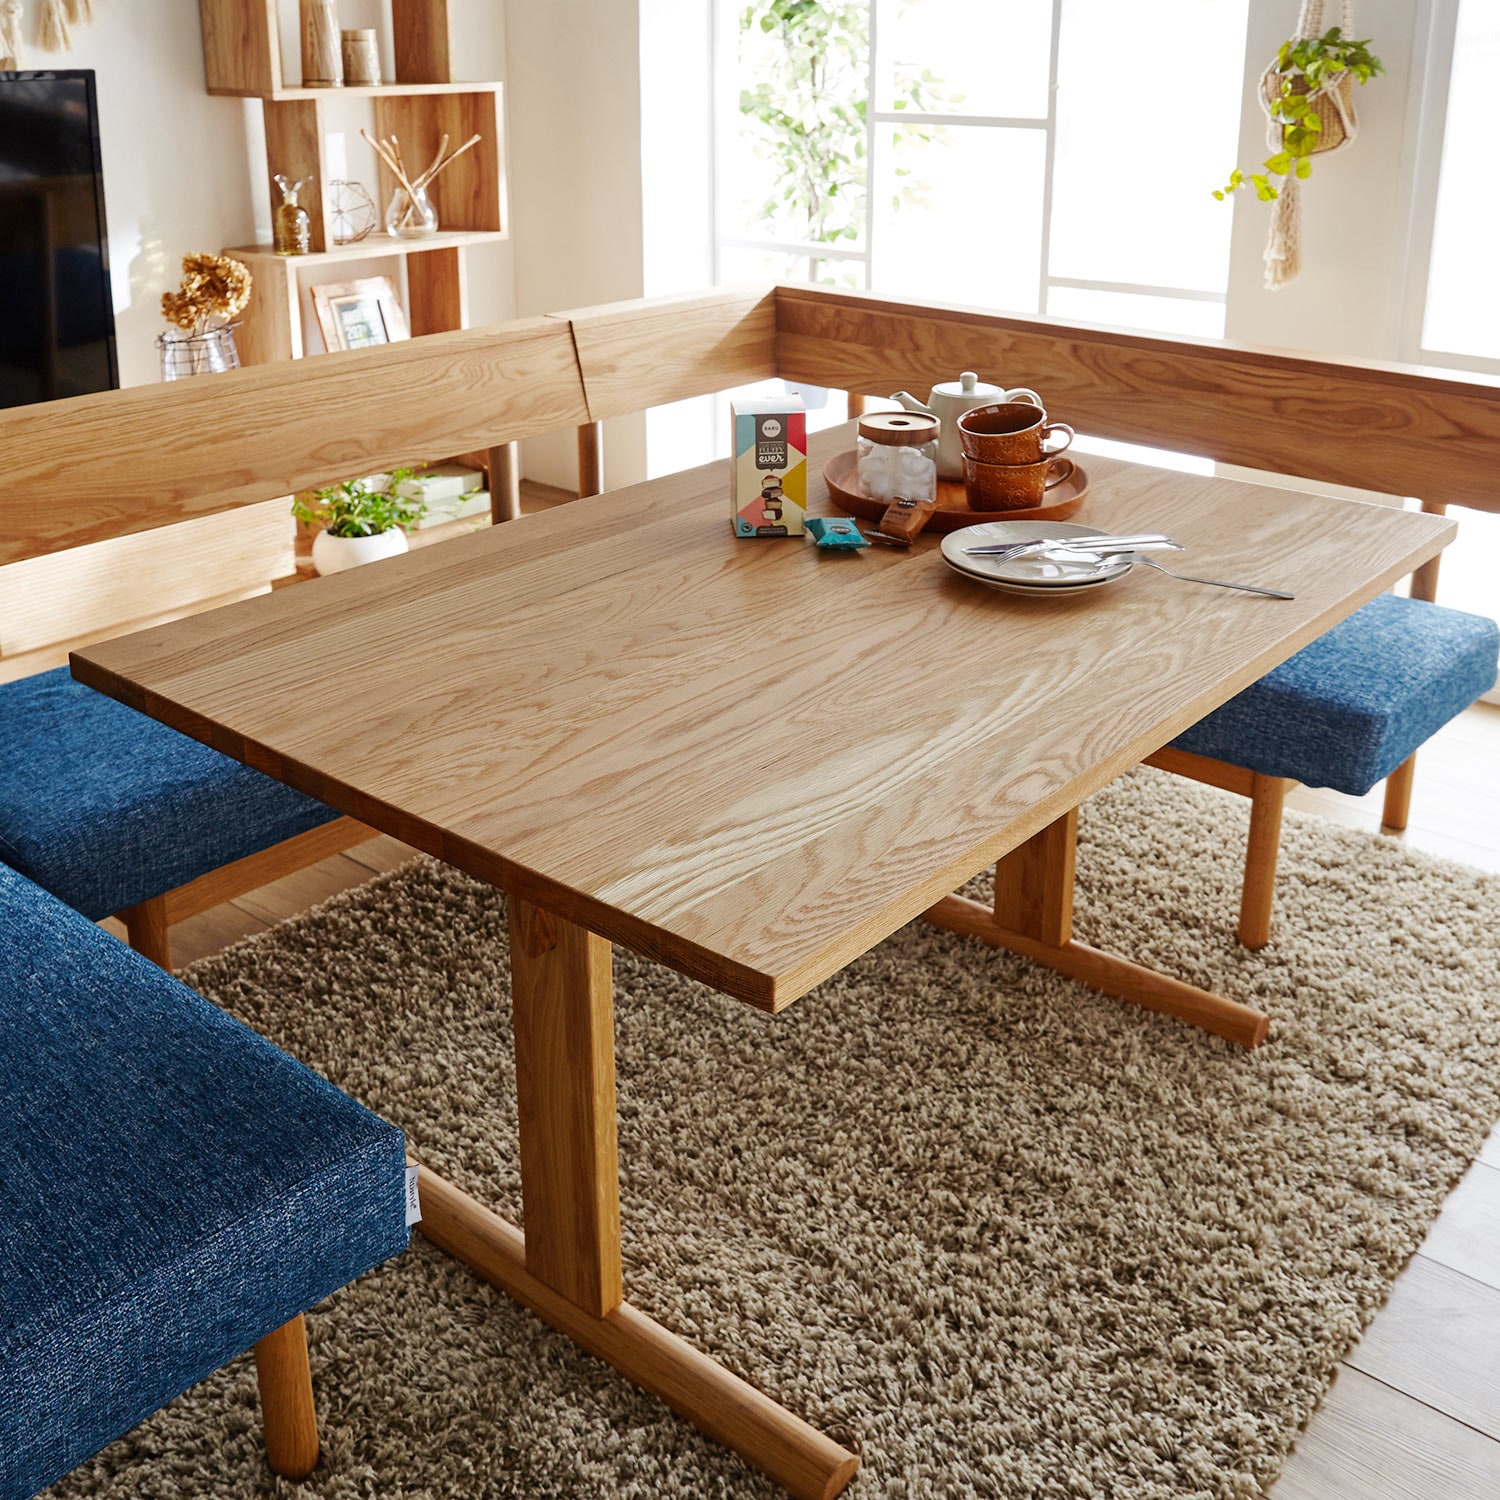 オーク無垢材を贅沢に使用した北欧モダンなダイニングテーブル